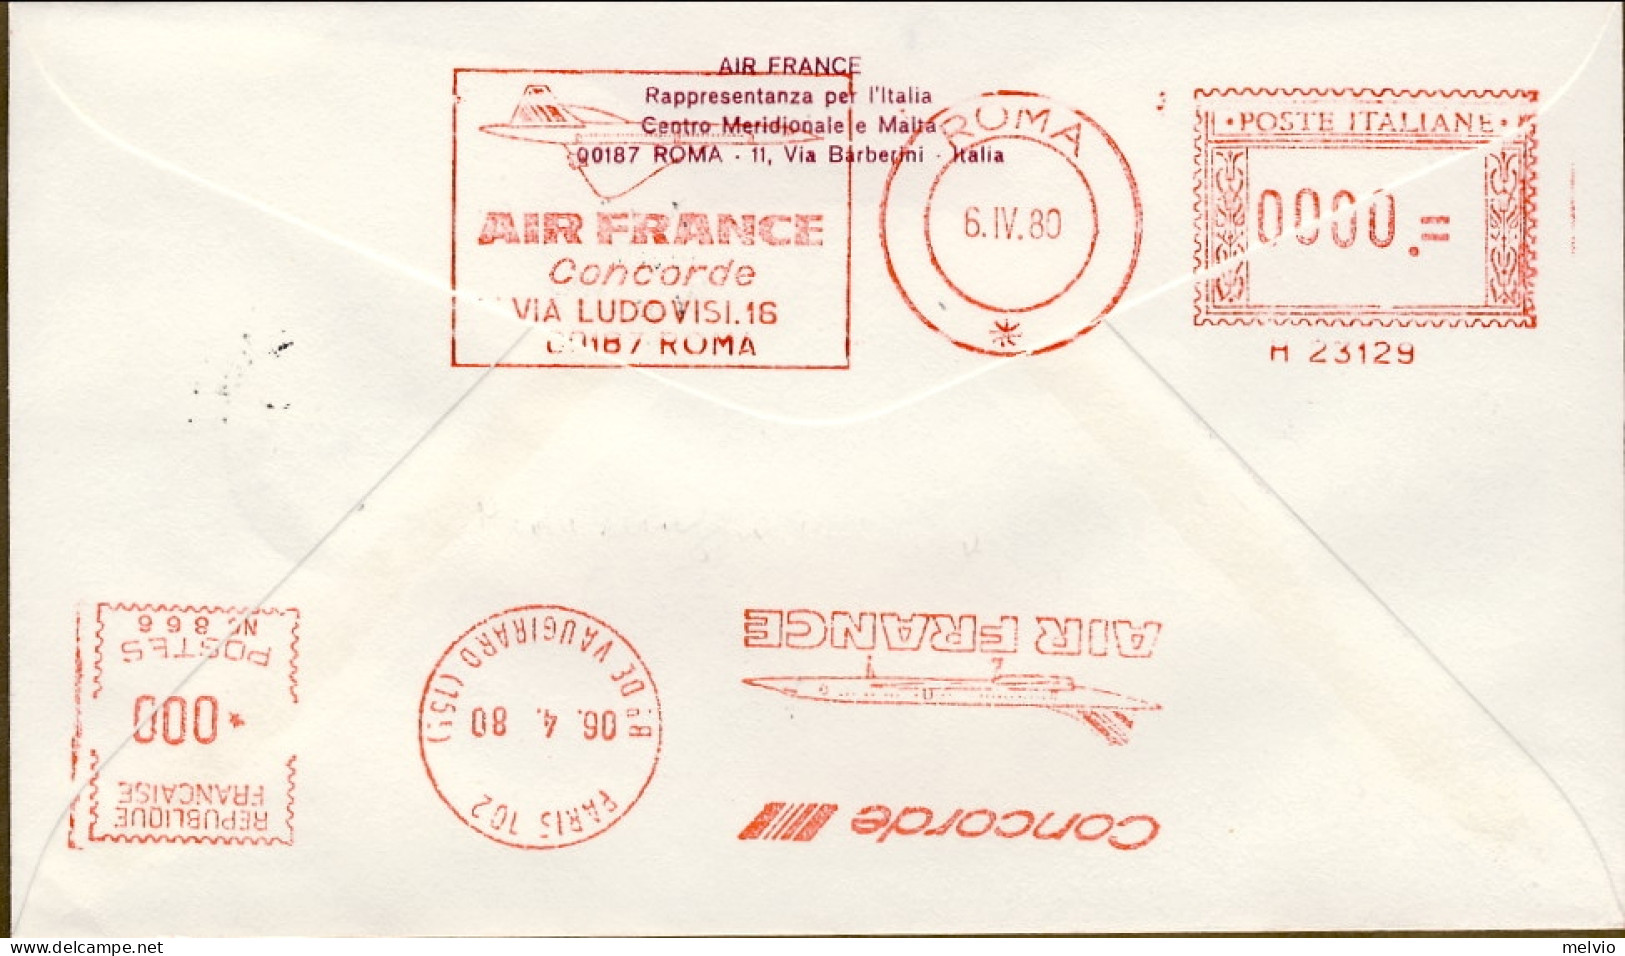 Vaticano-1980 I^volo Airbus Roma Parigi Della Air France - Luchtpost